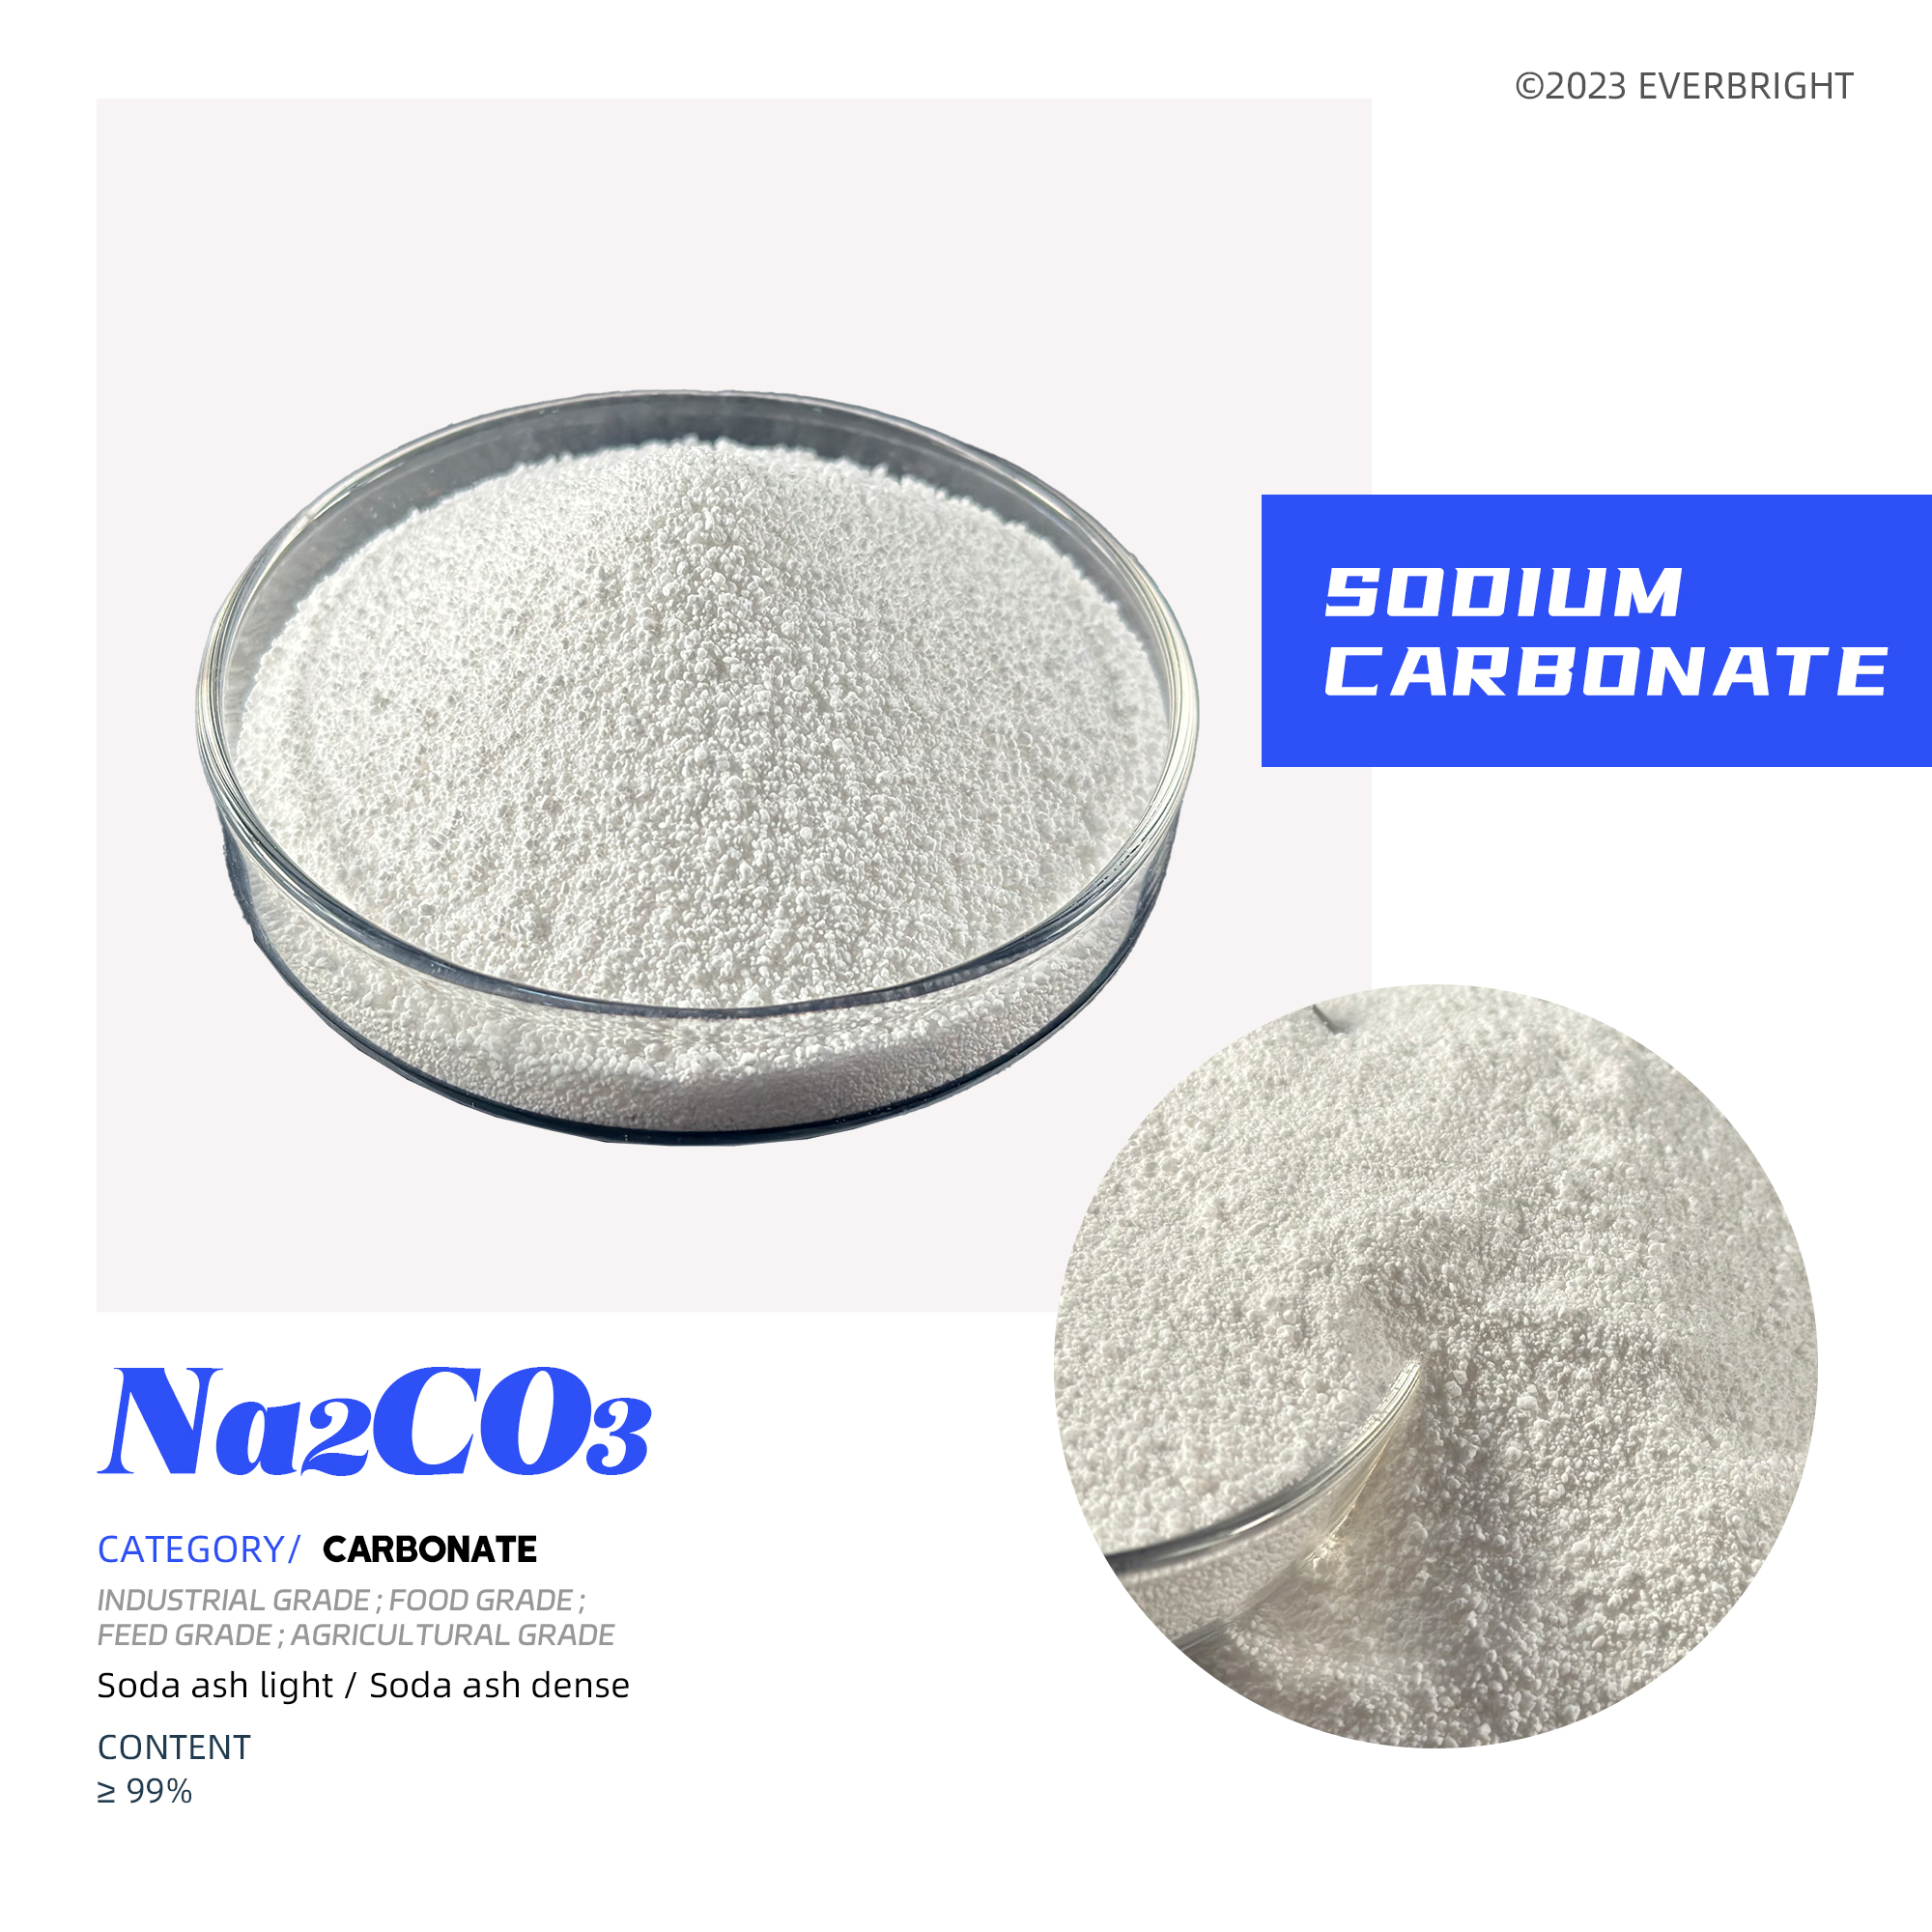 Naatriumkarbonaat